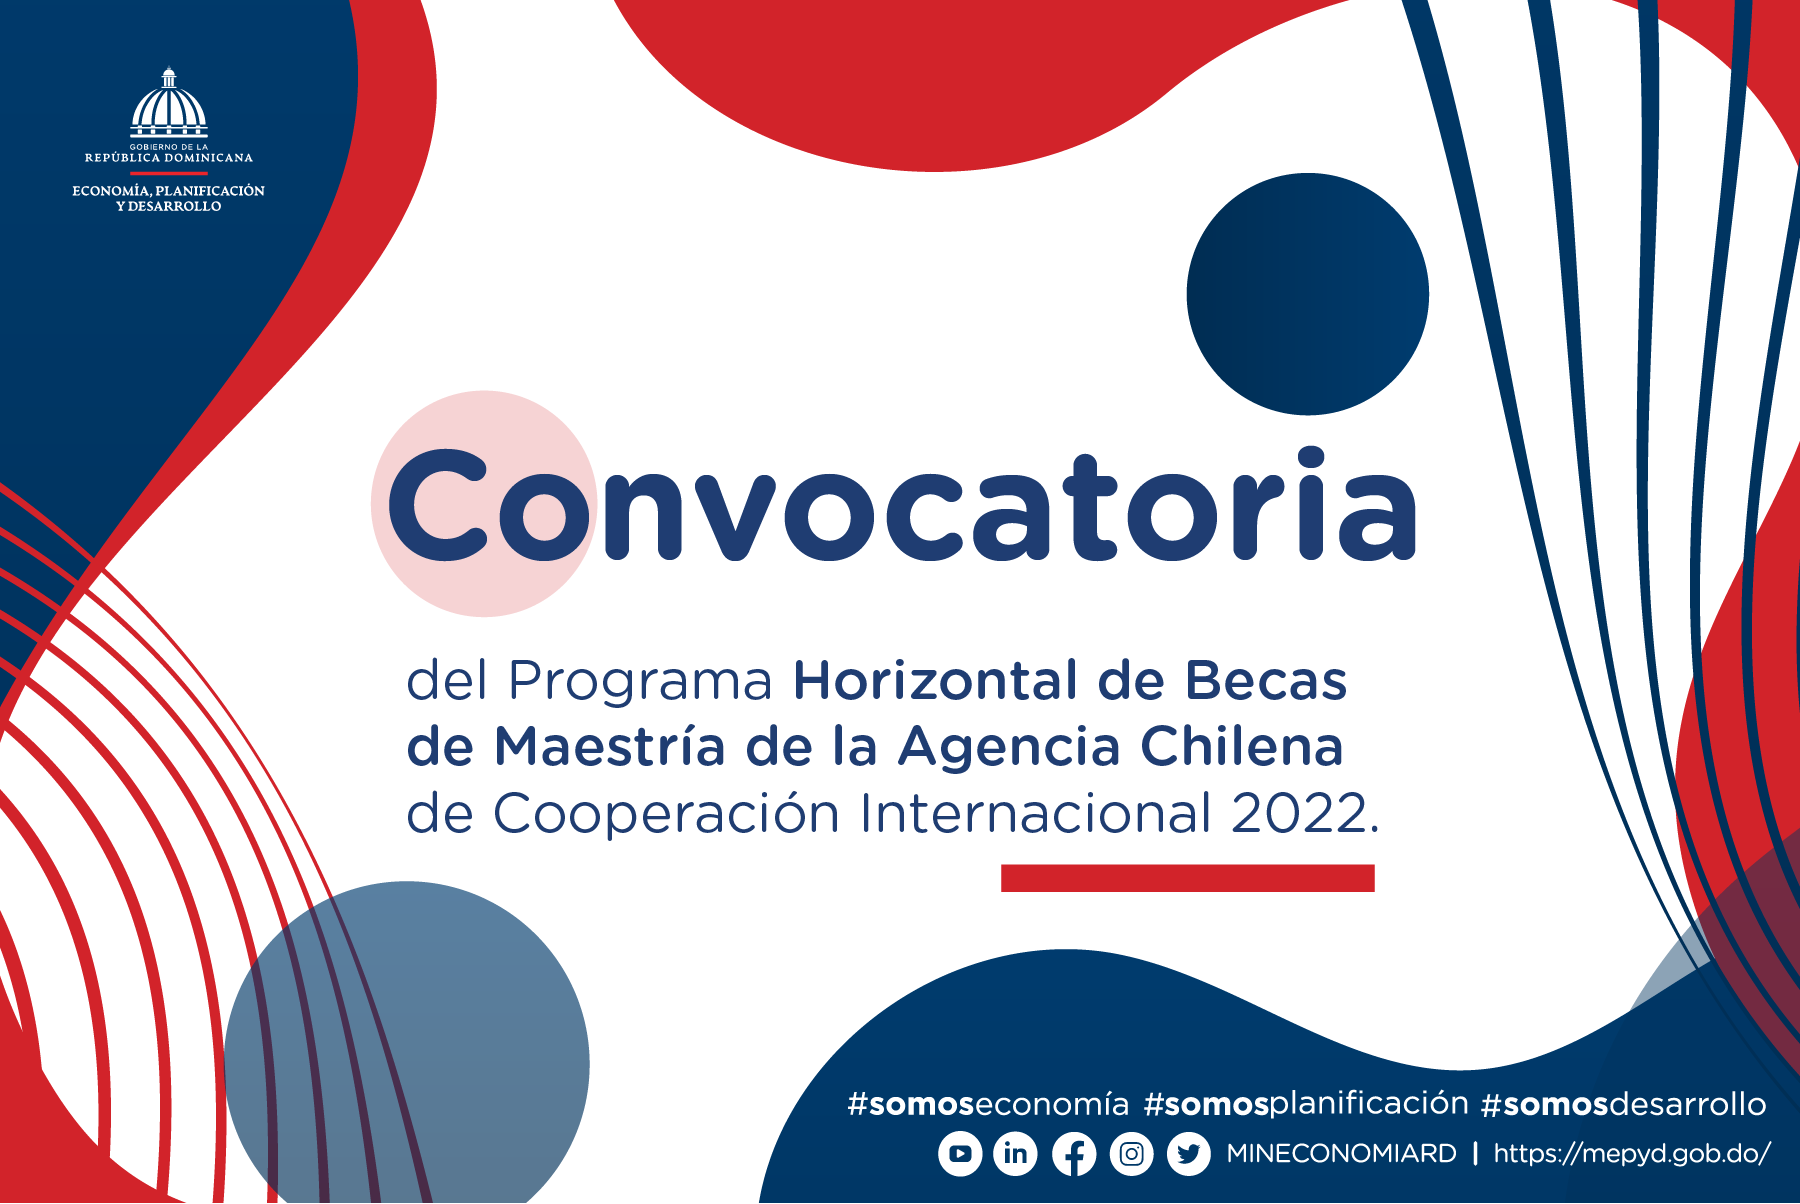 Convocatoria del Programa Horizontal de Becas de Maestría de la Agencia Chilena de Cooperación Internacional 2022